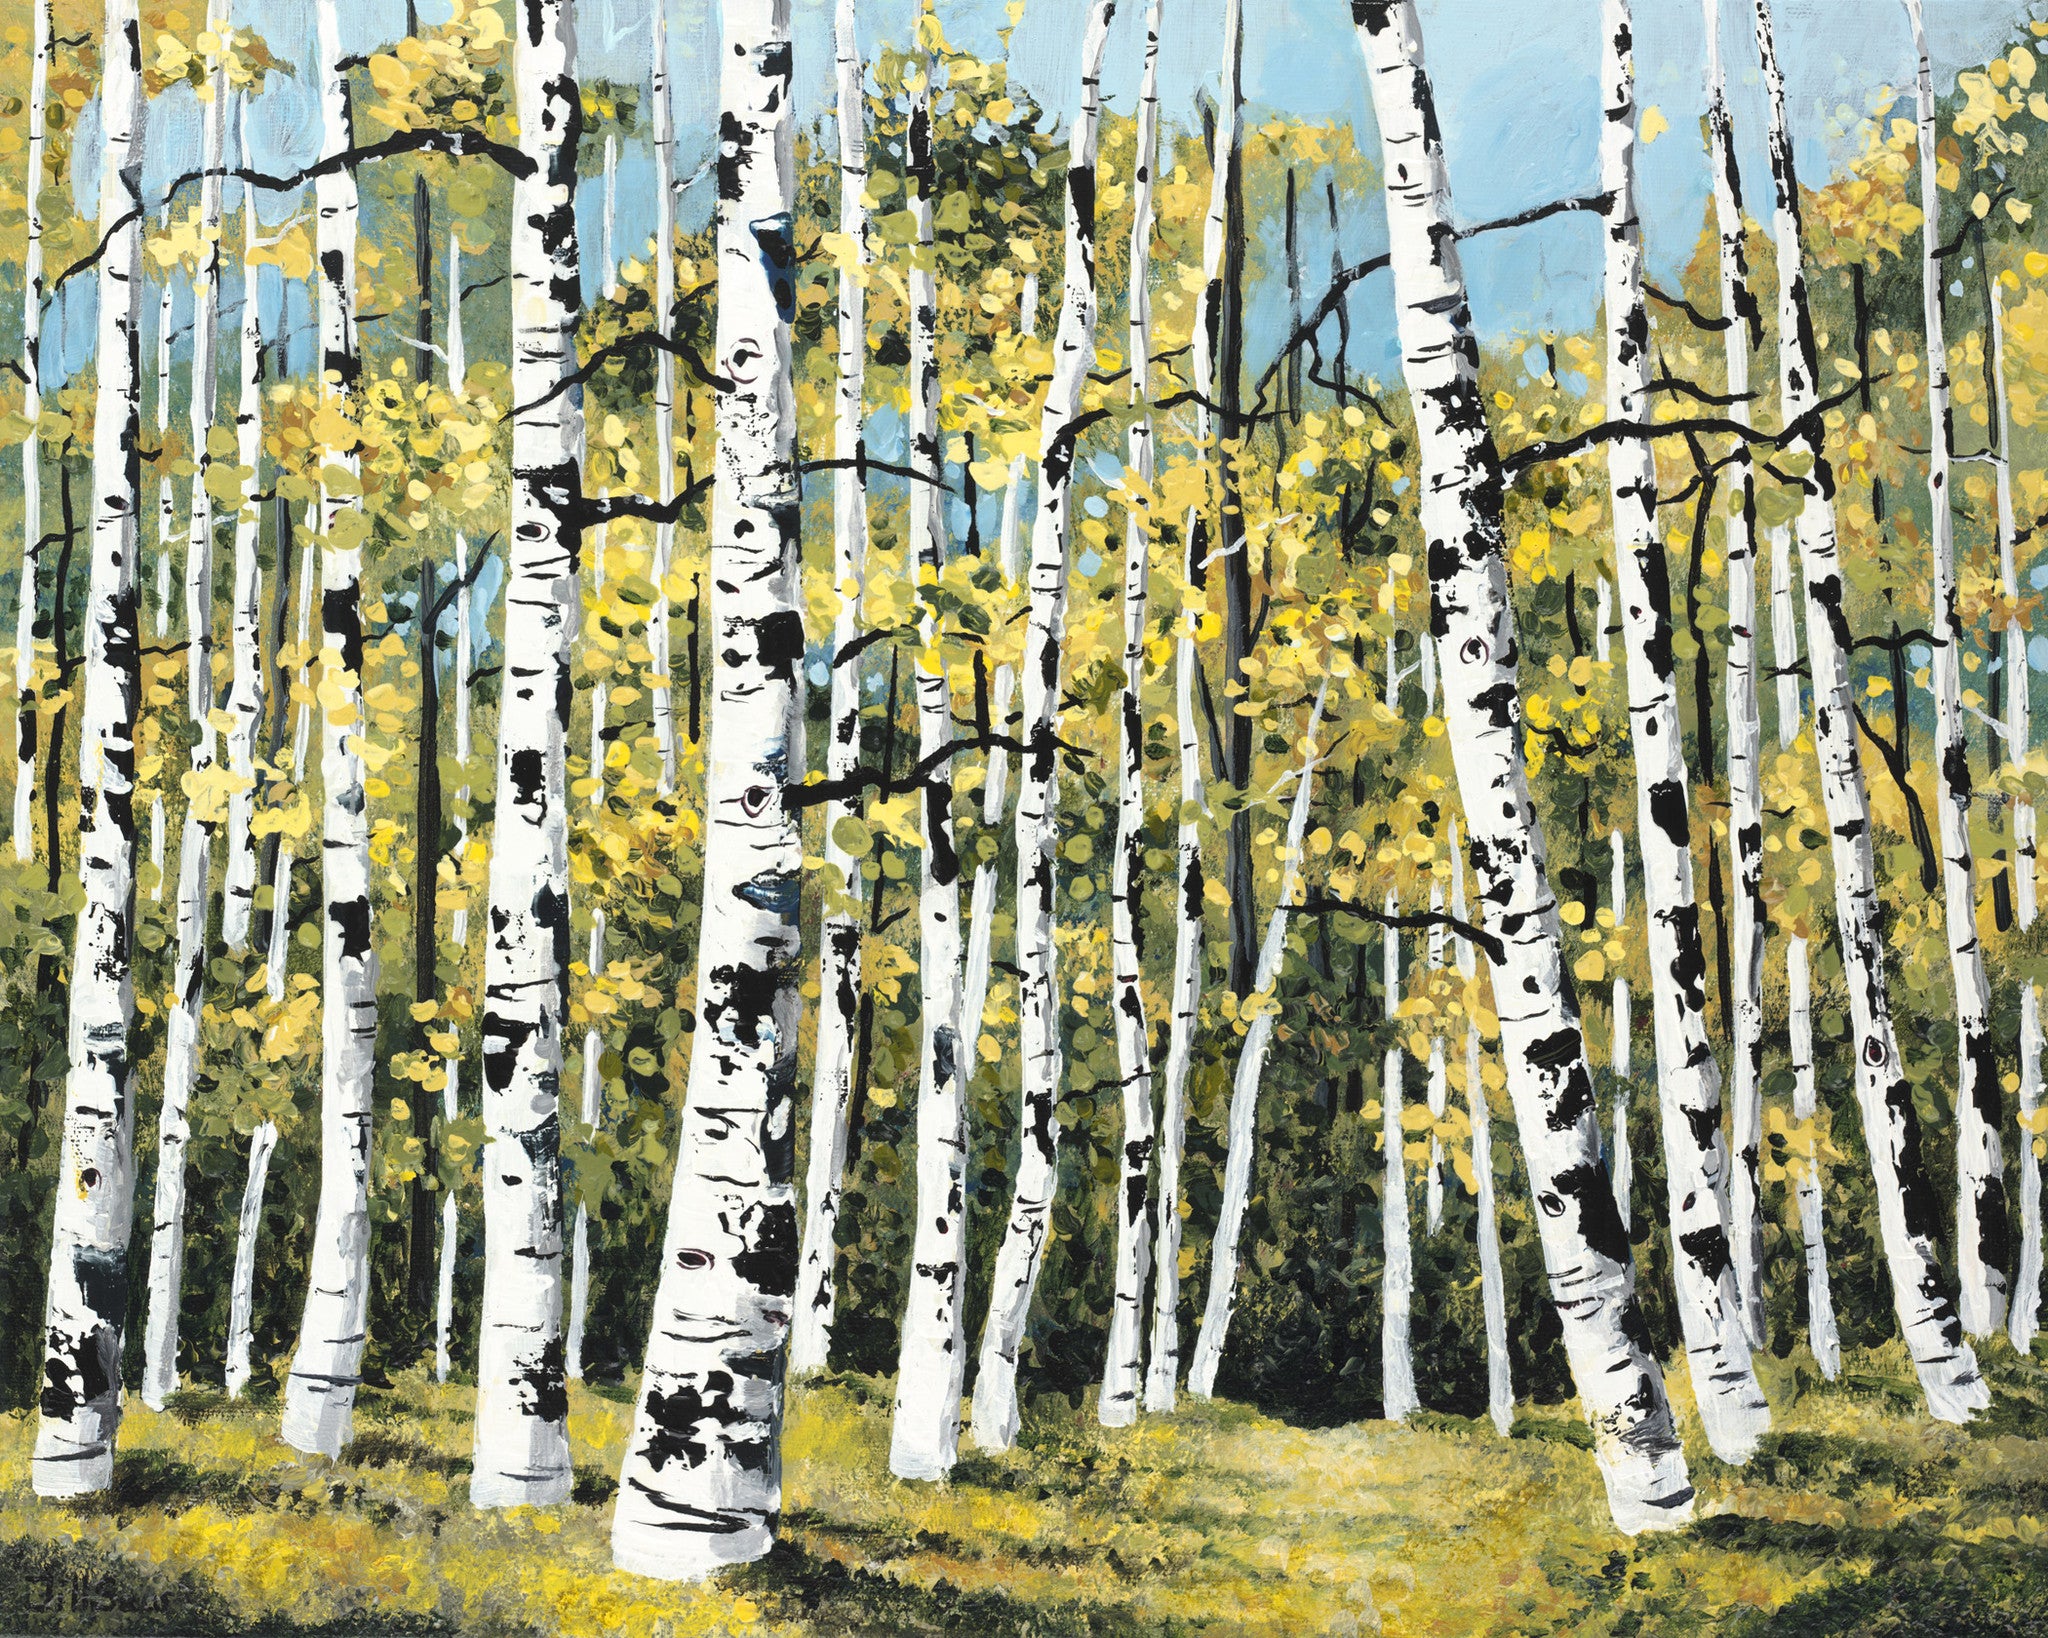 Summer Aspen Tree Painting by Jill Saur